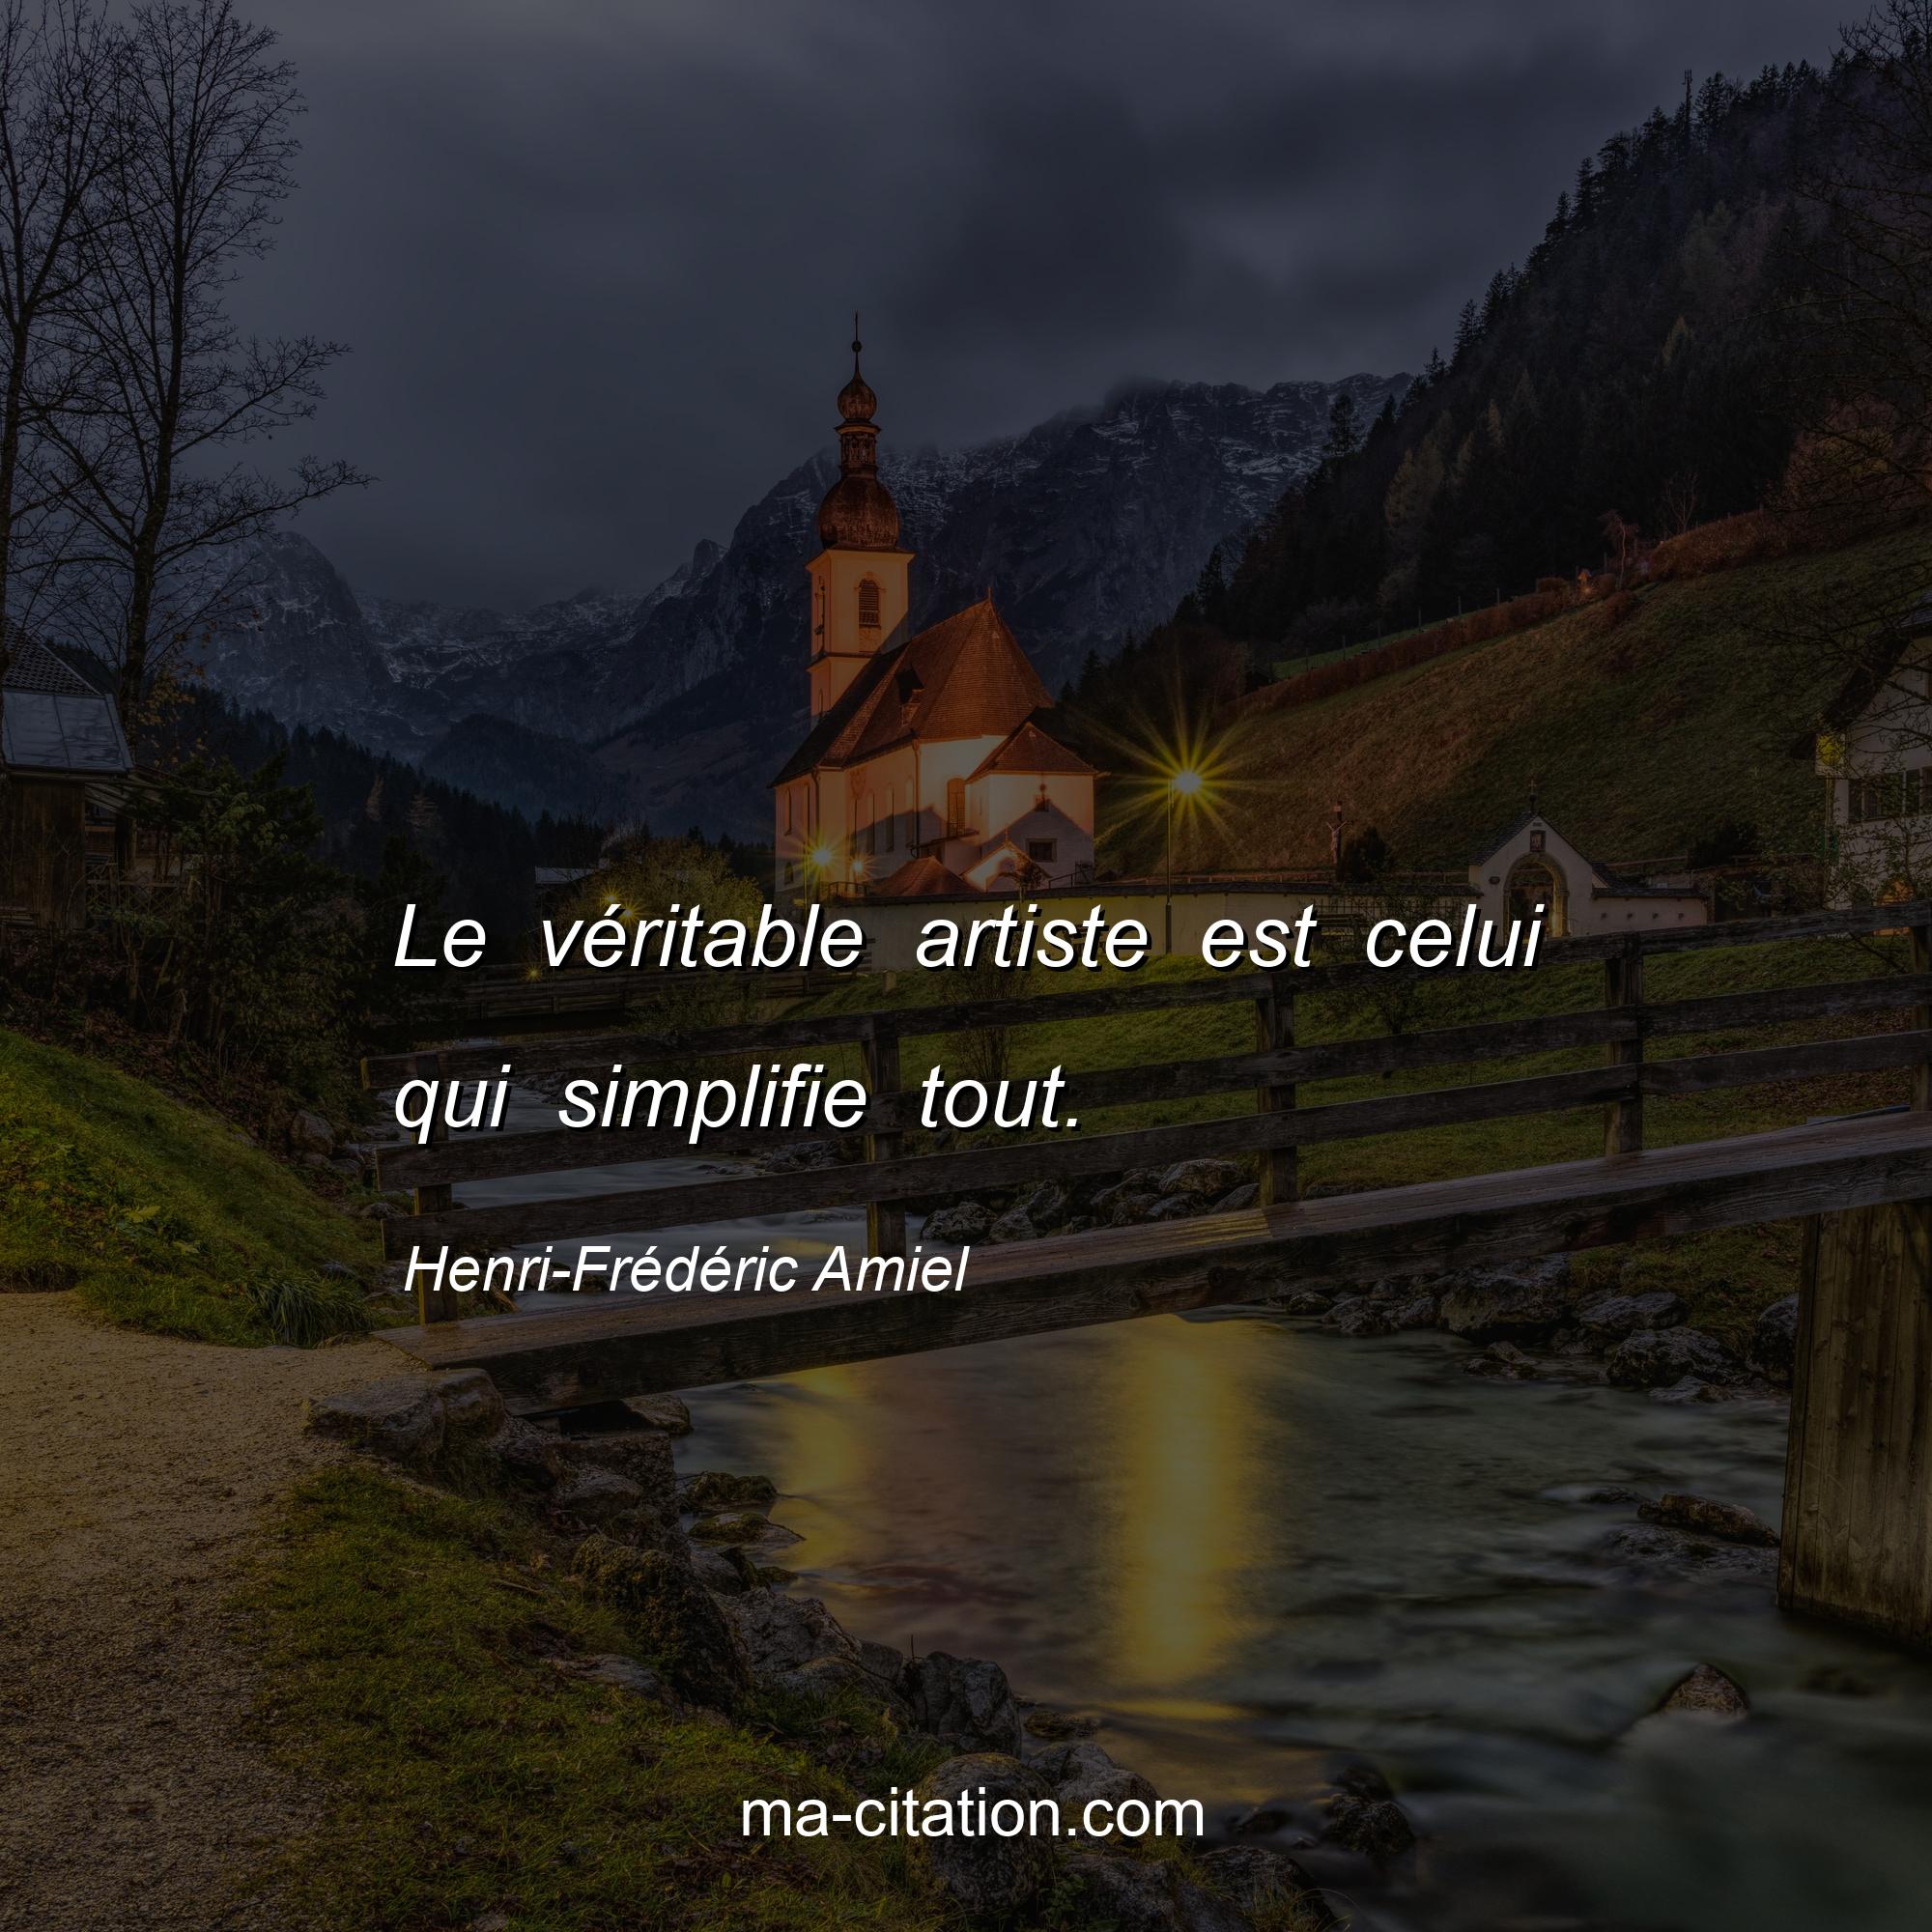 Henri-Frédéric Amiel : Le véritable artiste est celui qui simplifie tout.